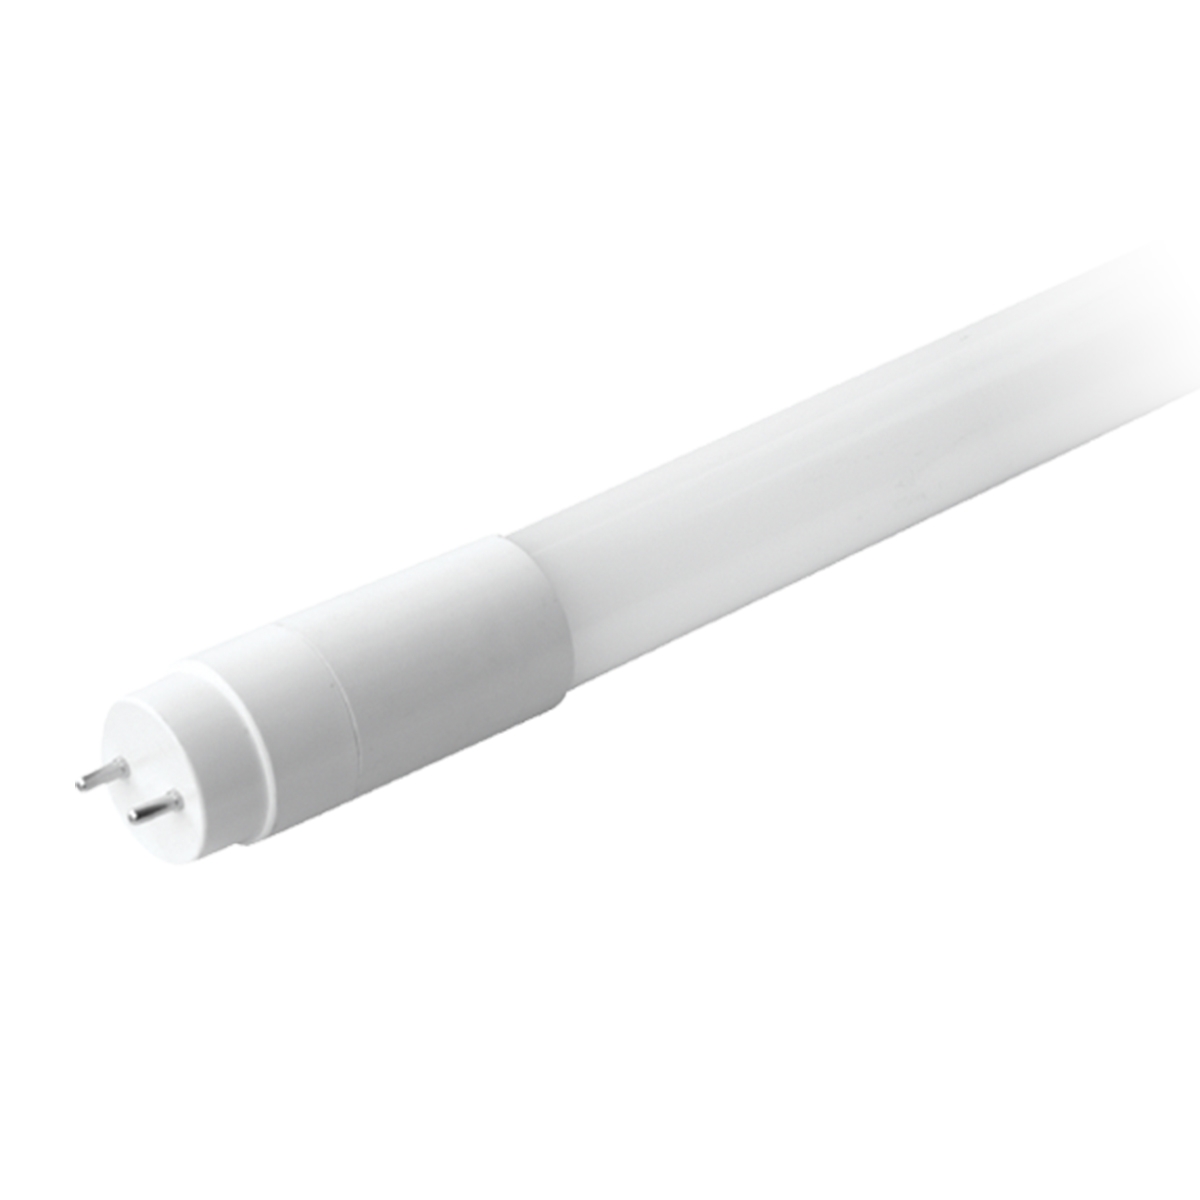 Tube Light  (6500K) 9.5W مصباح من شركة ميجامان - موفرة للطاقة - اللون أبيض ساطع T0409 